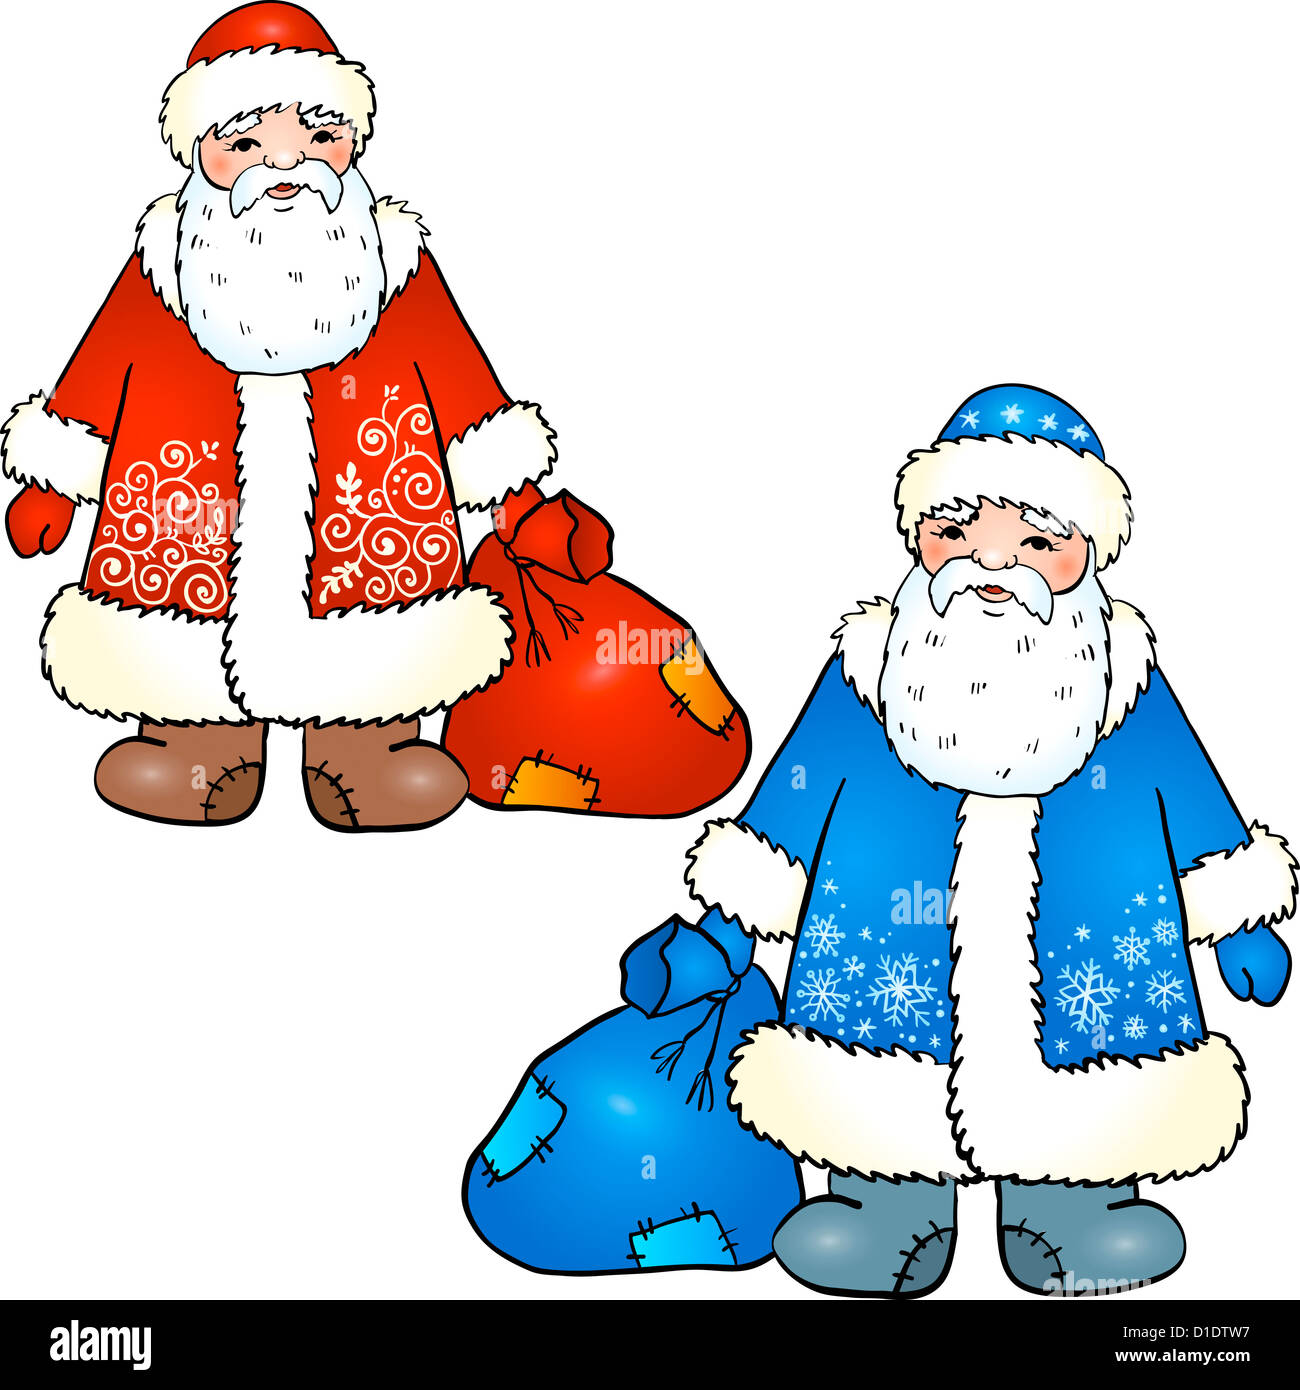 Russische Weihnachtsmann - Väterchen Frost. Vektor-illustration Stockfoto